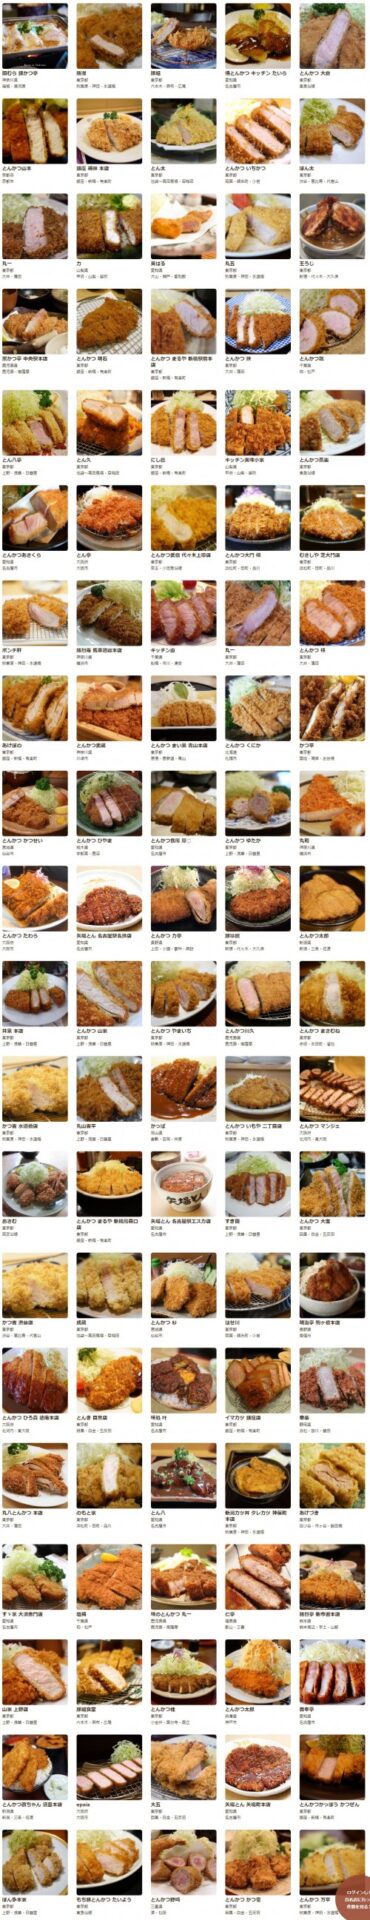 食べログ とんかつ 百名店 2017